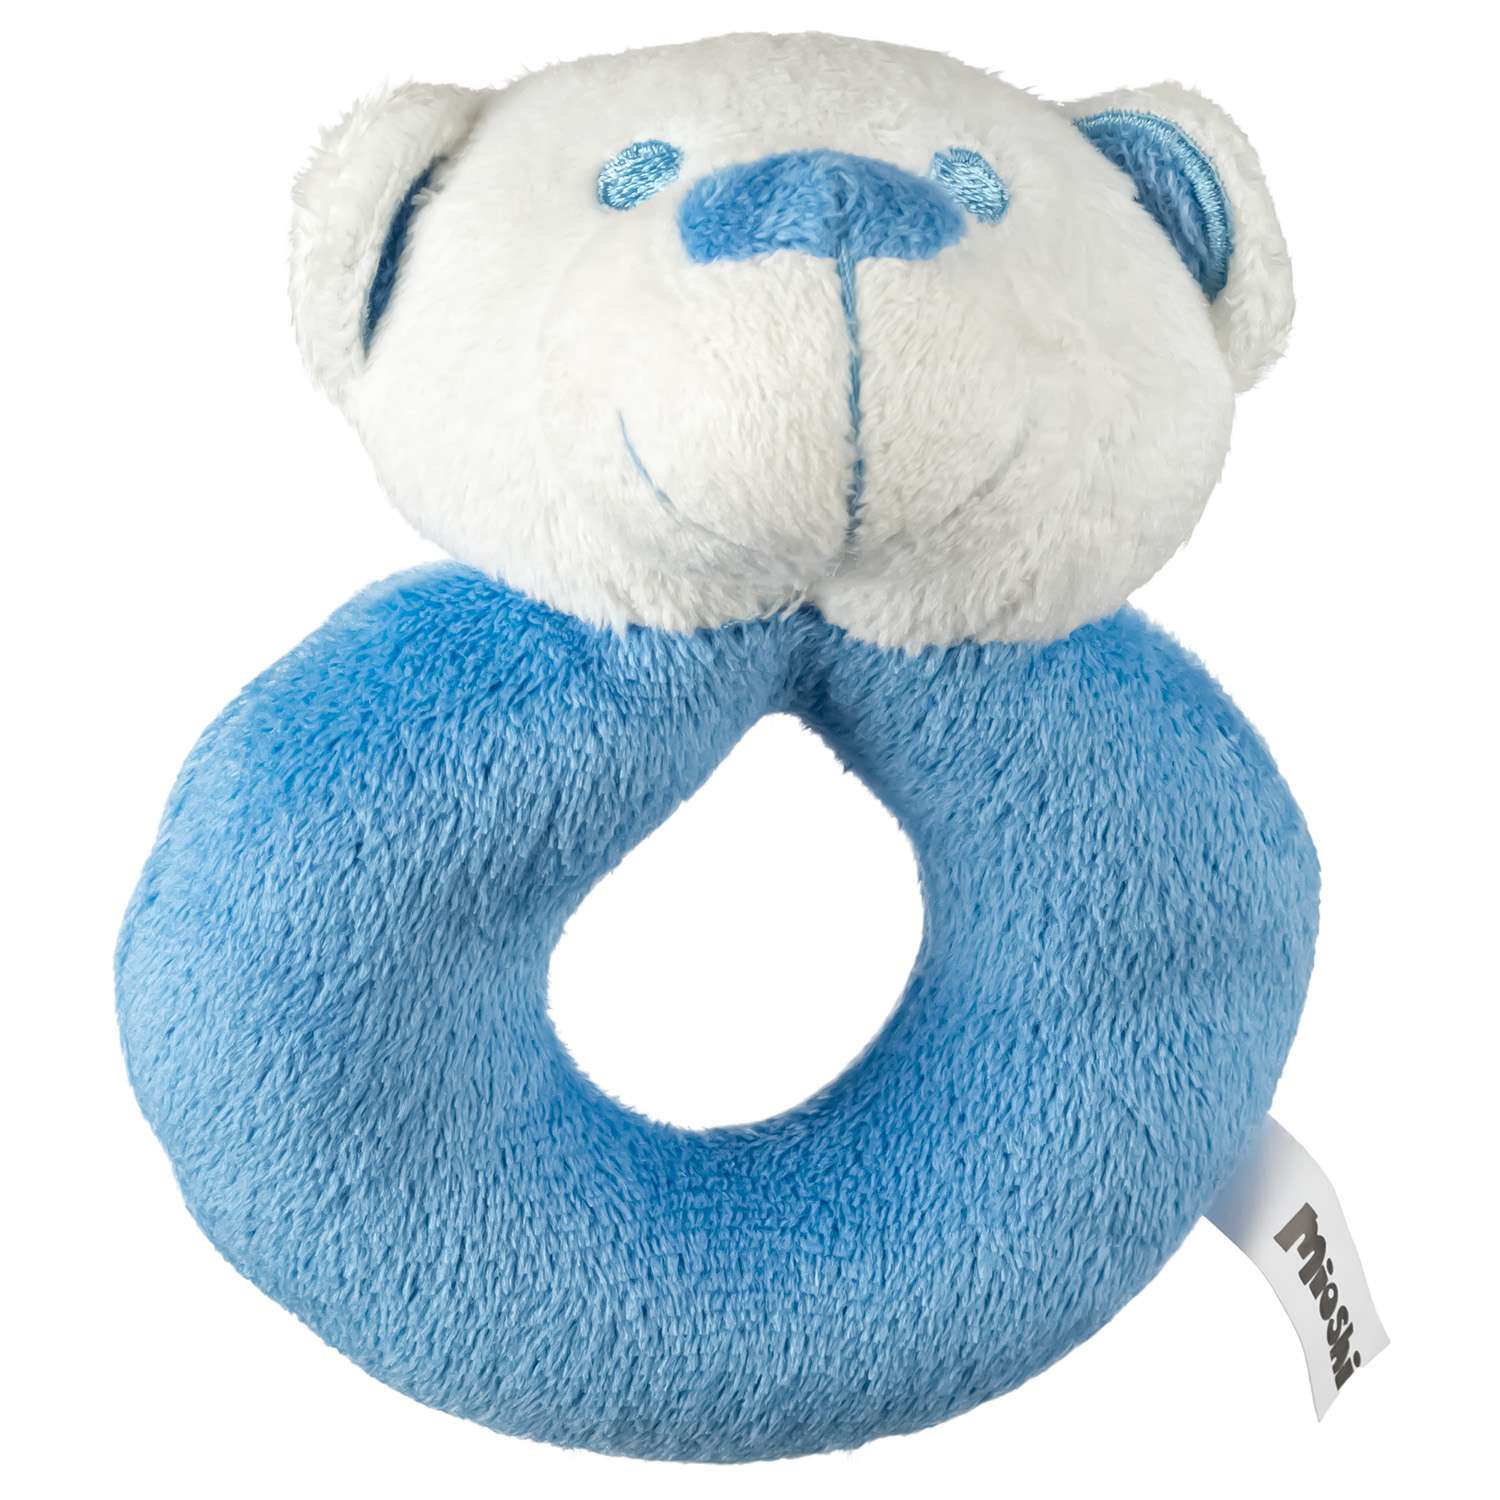 Погремушка Mioshi милый медвежонок 12 см голубой - фото 1